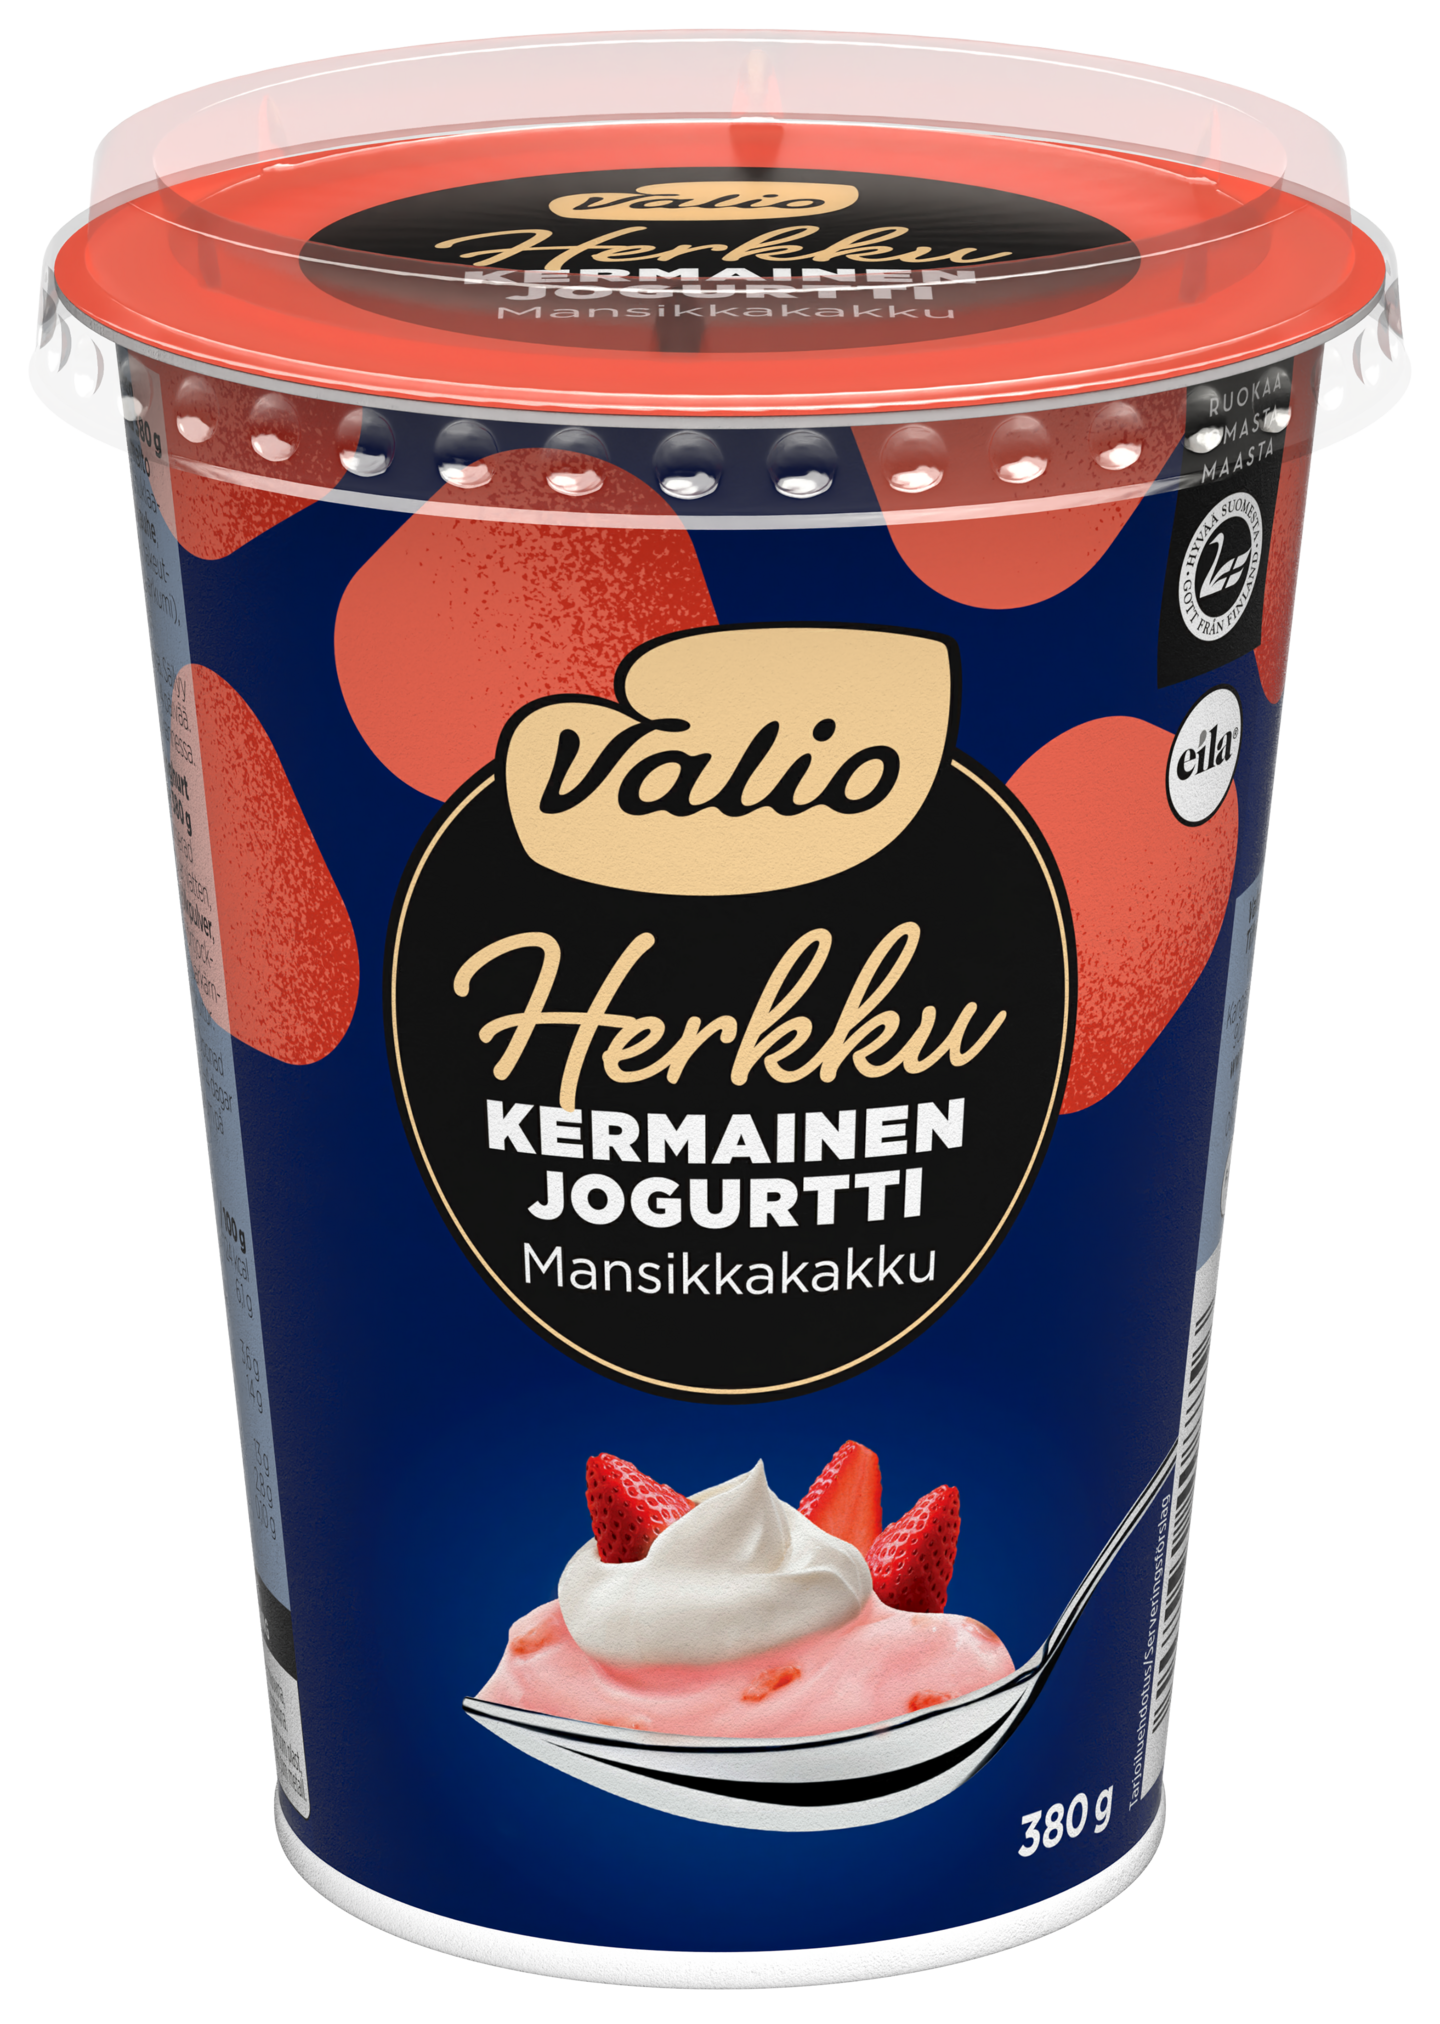 Valio Herkku kermainen jogurtti 380g mansikkakakku laktoositon